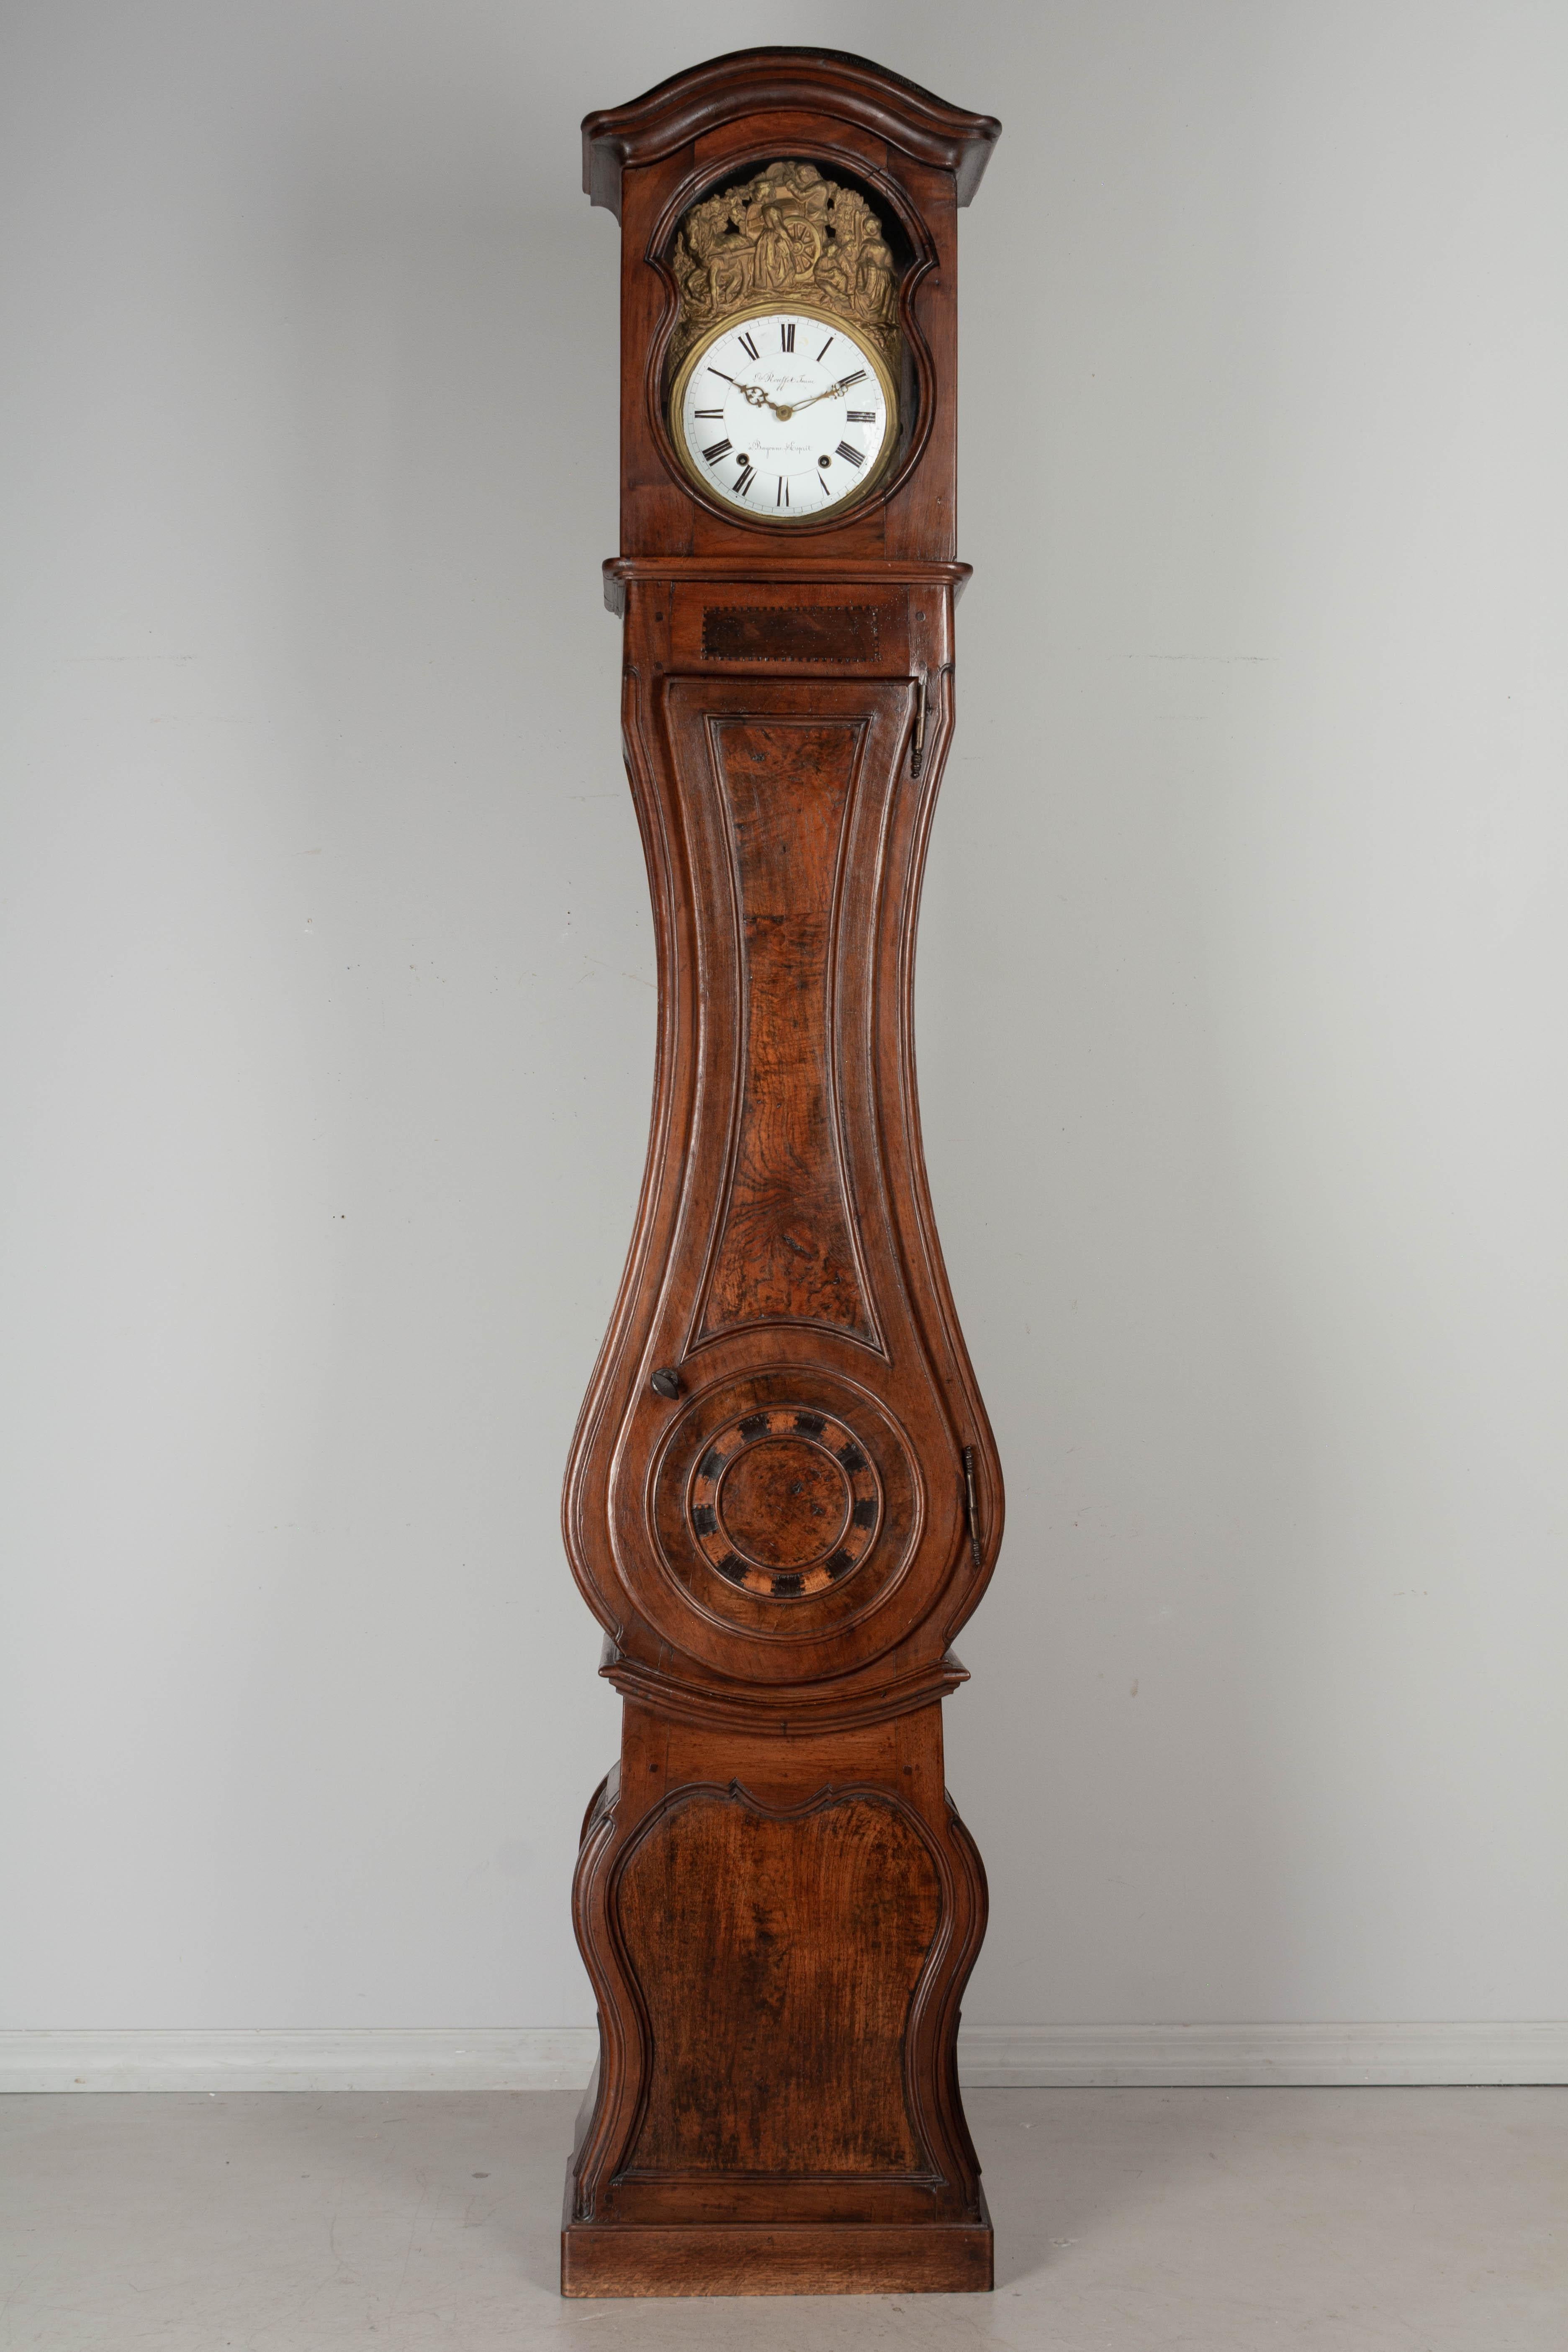 Horloge de parquet, ou horloge à grand boîtier, du 19ème siècle en Bourgogne. Le boîtier est en noyer massif avec des détails en marqueterie. En deux parties avec un corps de forme incurvée, des côtés lambrissés et un chapeau de gendarme. Vitres